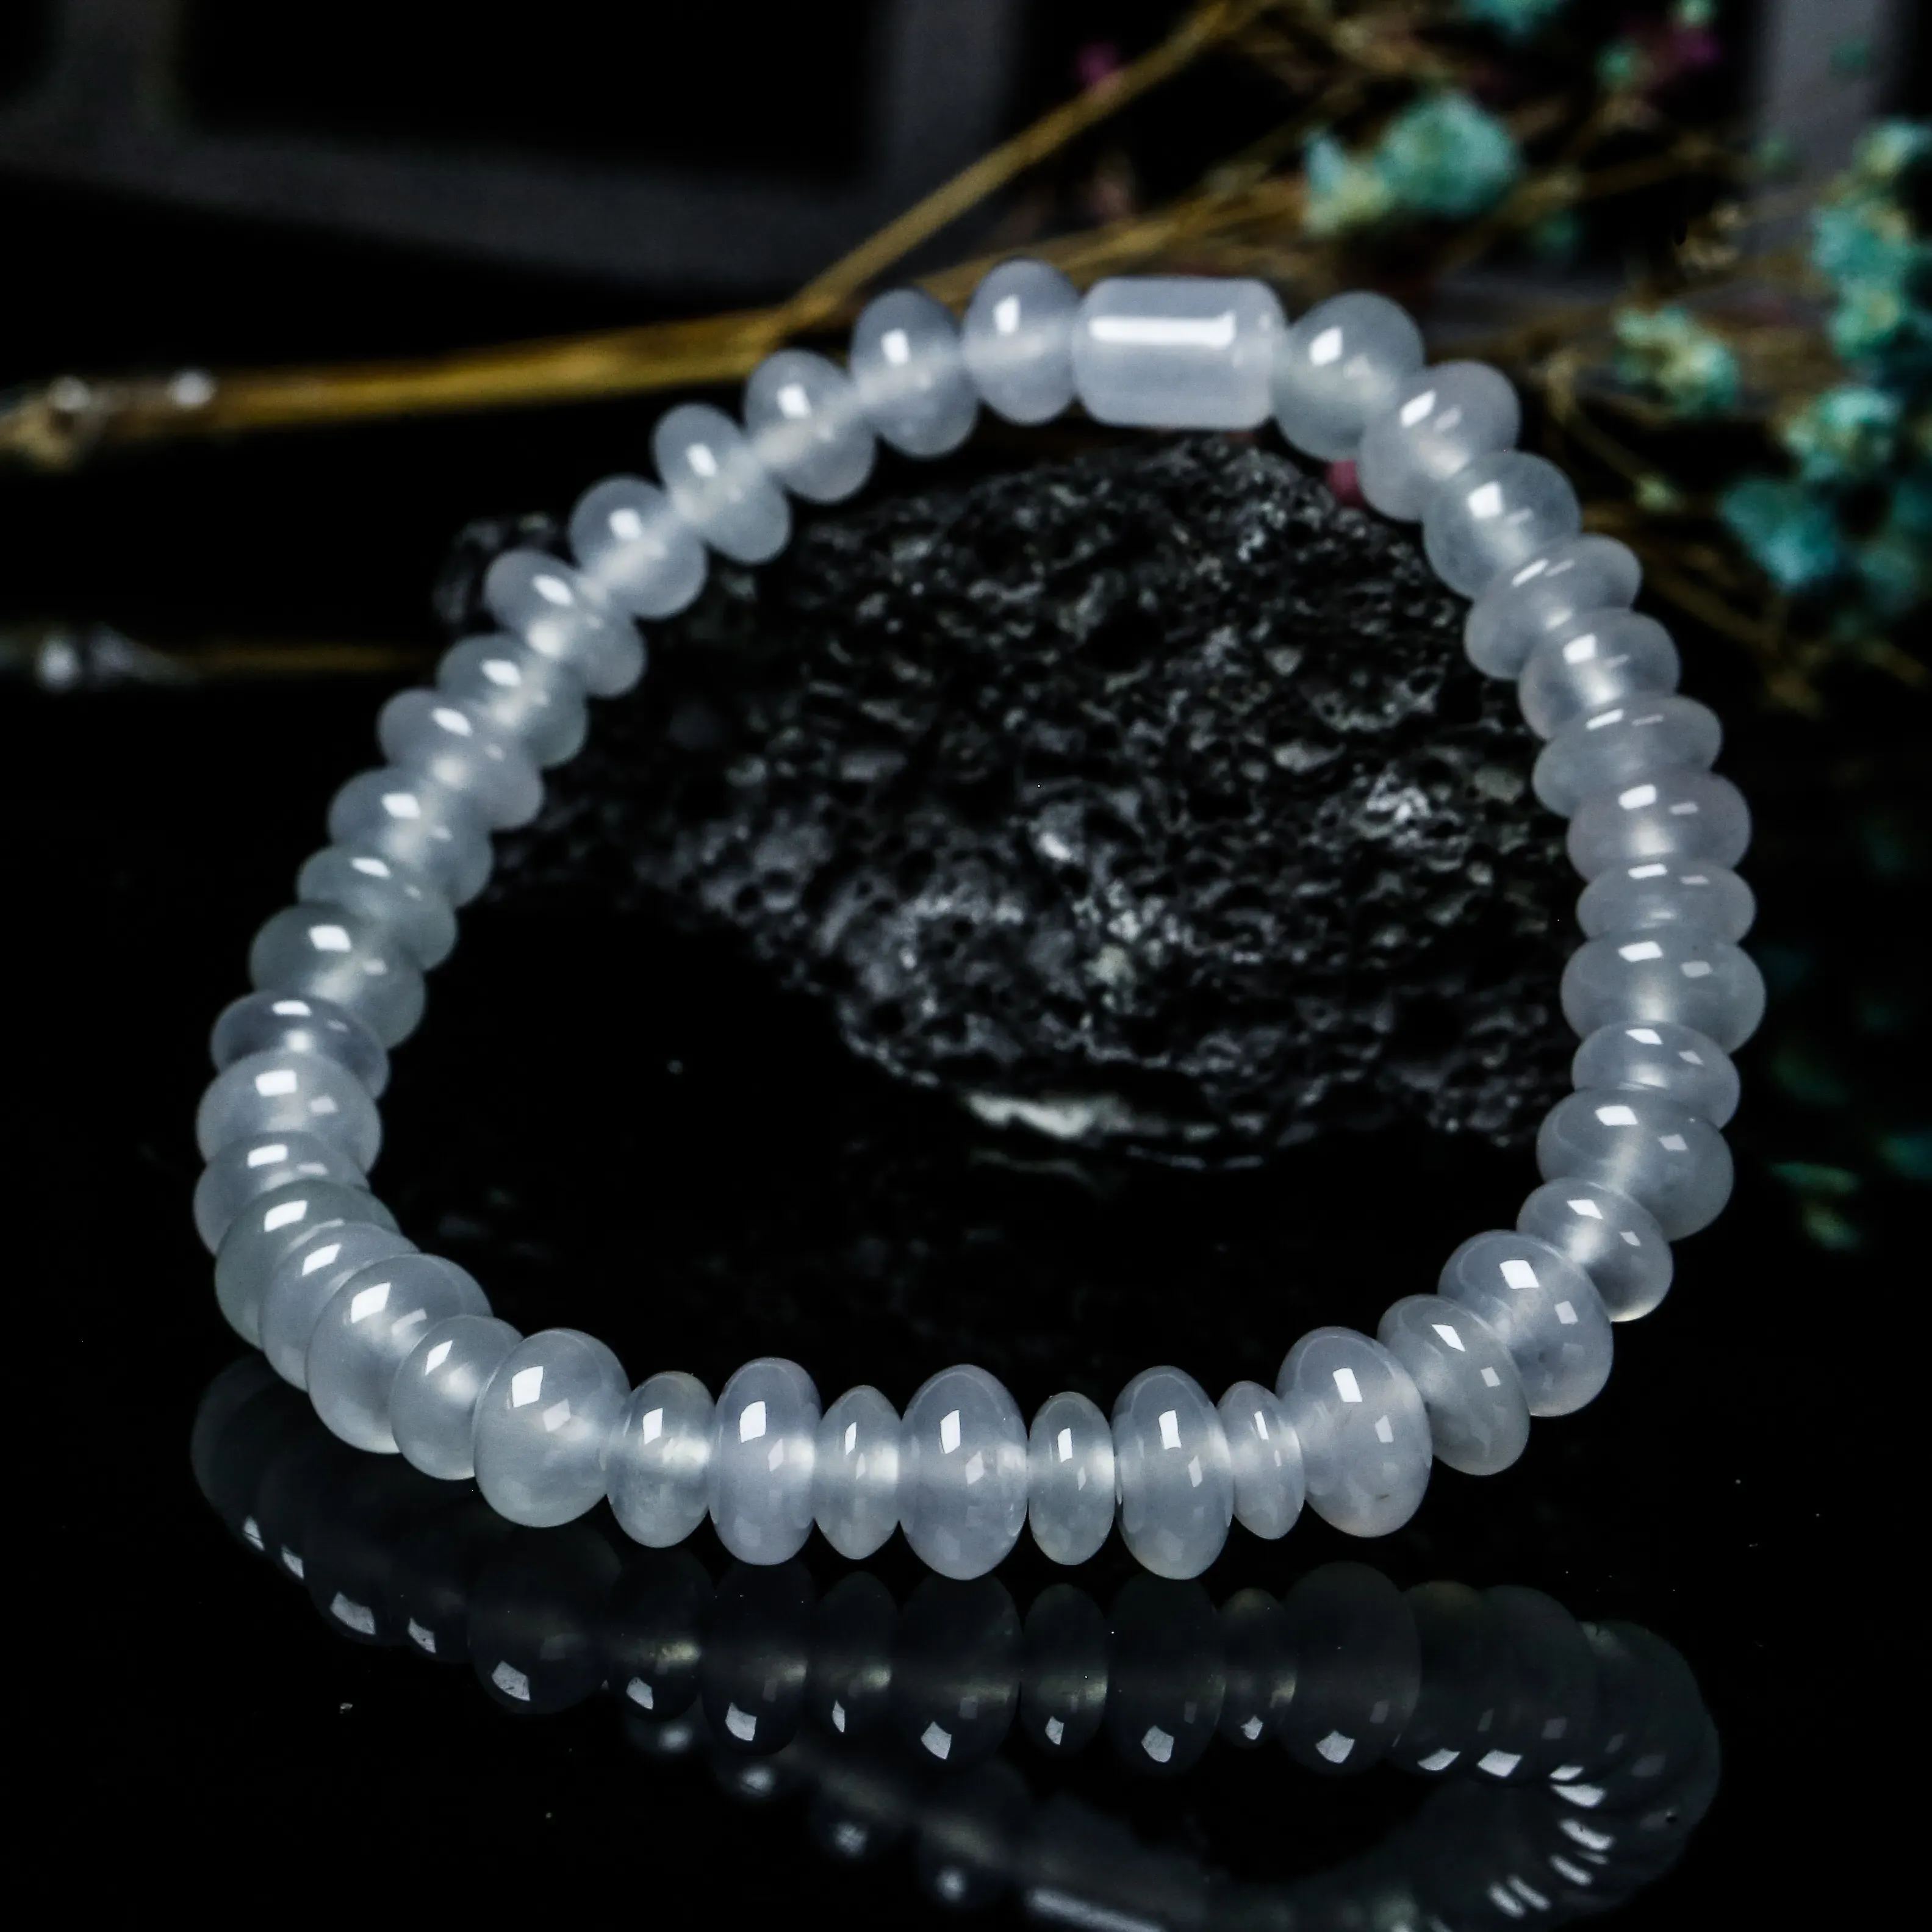 推荐款冰种珠子翡翠手串。共42颗珠子，取其中一颗珠尺寸大约6.8*4mm，冰透水润，质地细腻。上手佩戴效果佳。